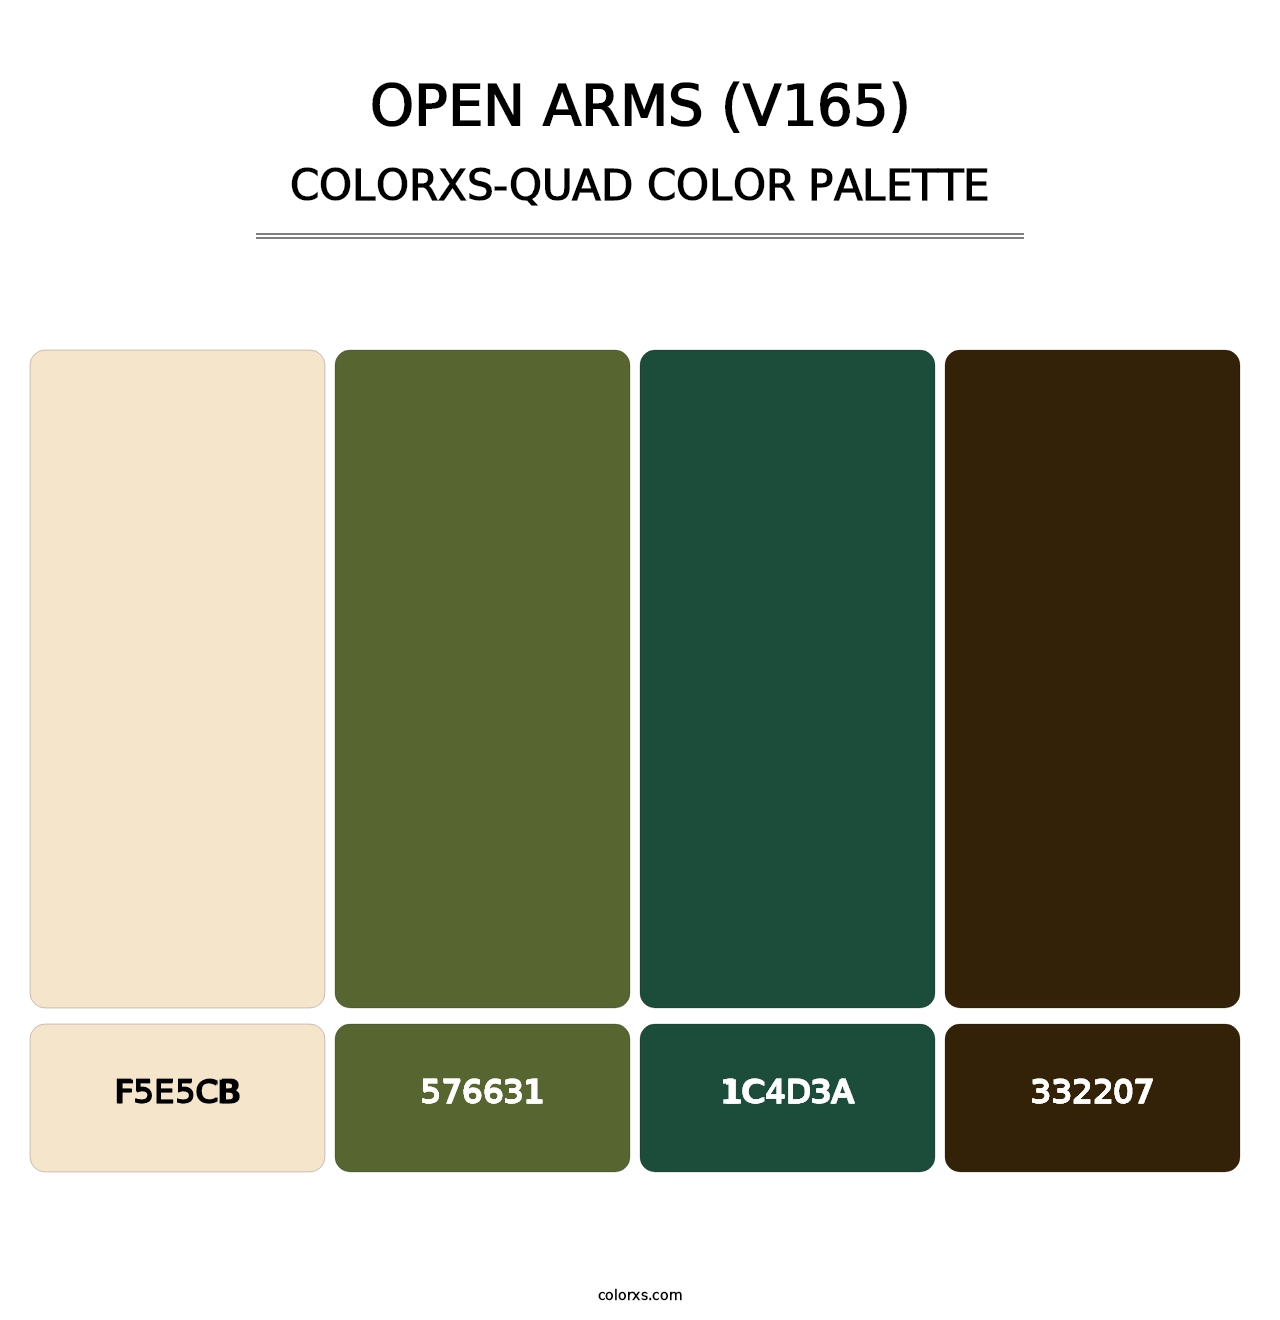 Open Arms (V165) - Colorxs Quad Palette